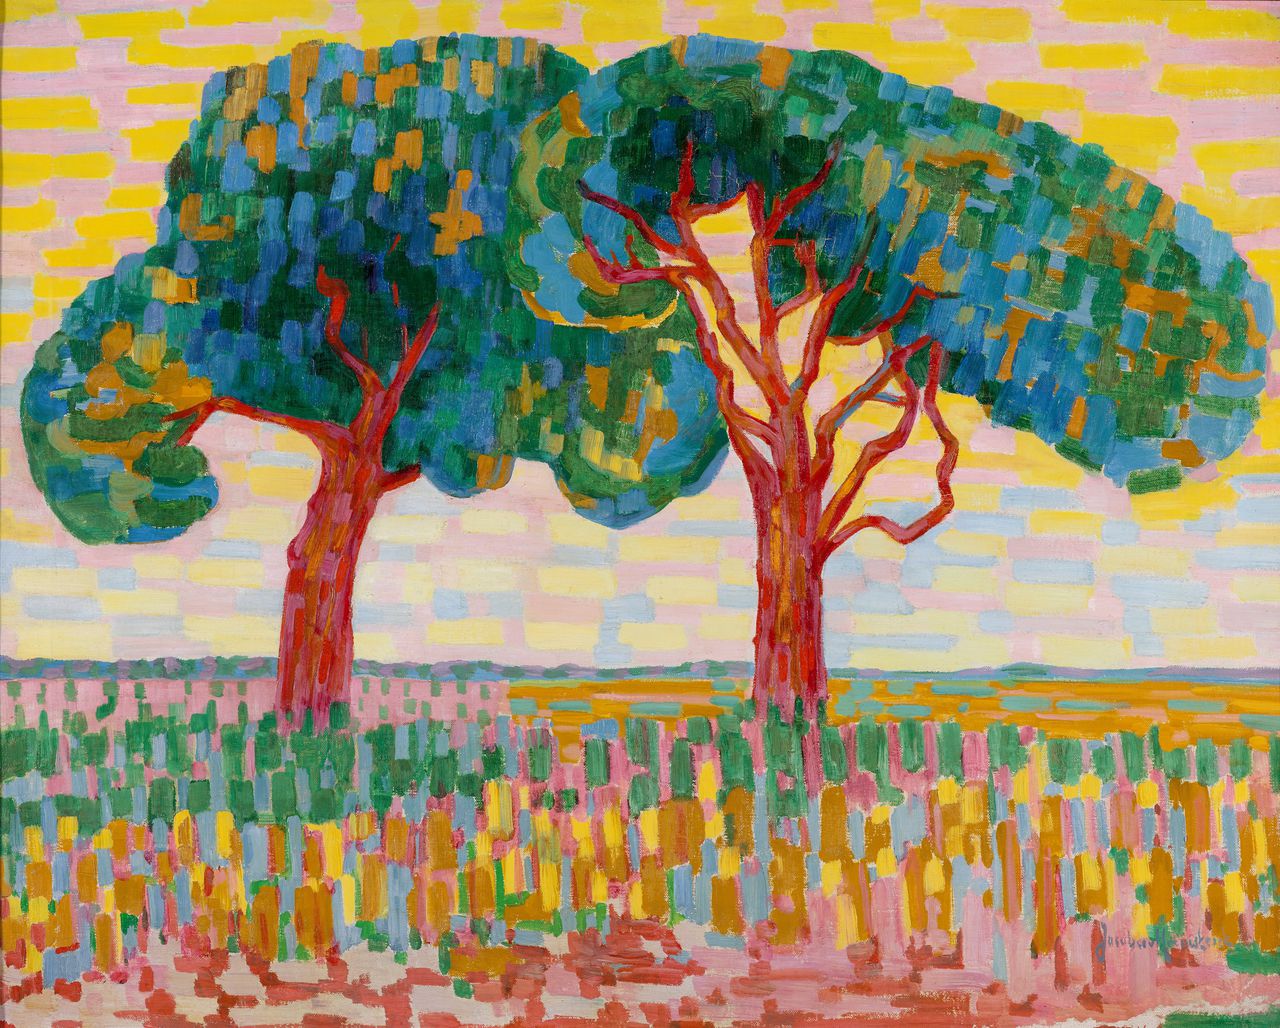 Jacoba van Heemskerck (1876-1923), Twee bomen, 1908-1910. Olieverf op doek 70,5 x 88,2 cm.